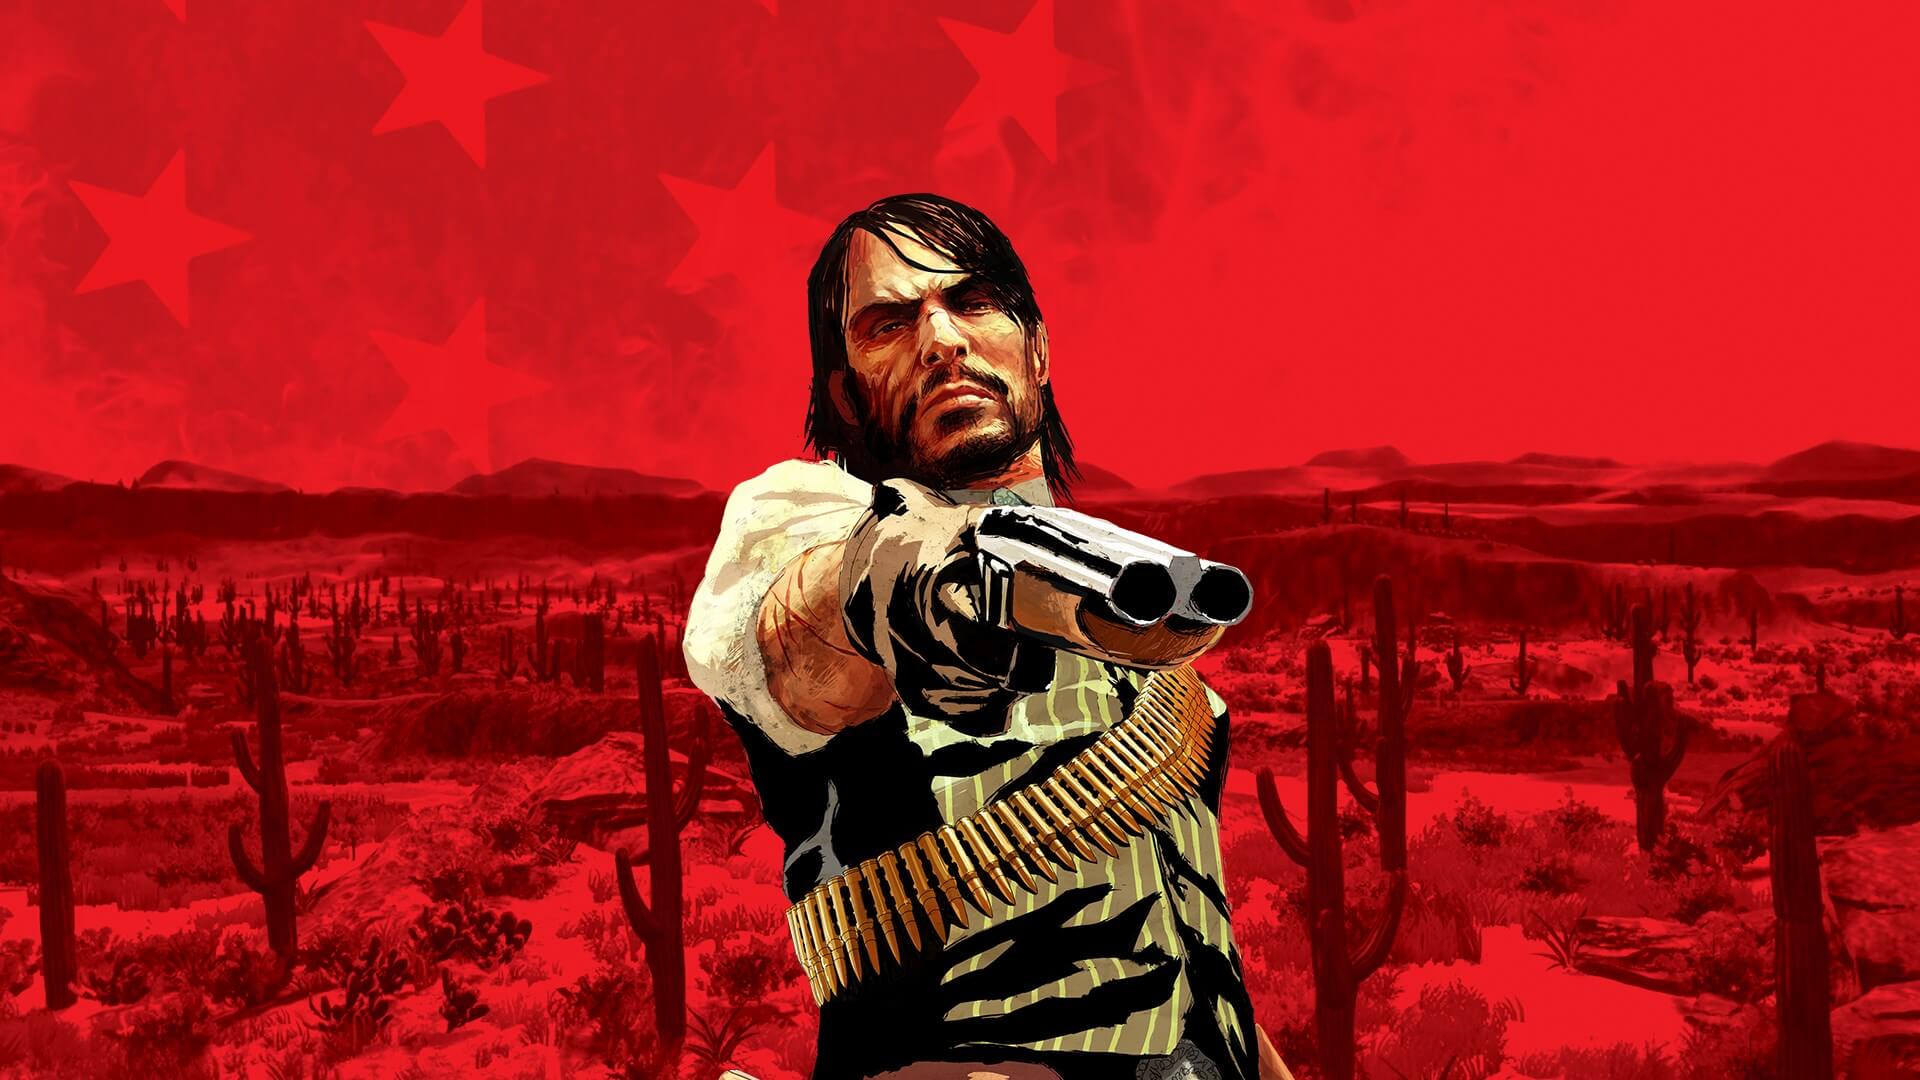 Tavasszal érkezik a Red Dead Redemption felújított változata?